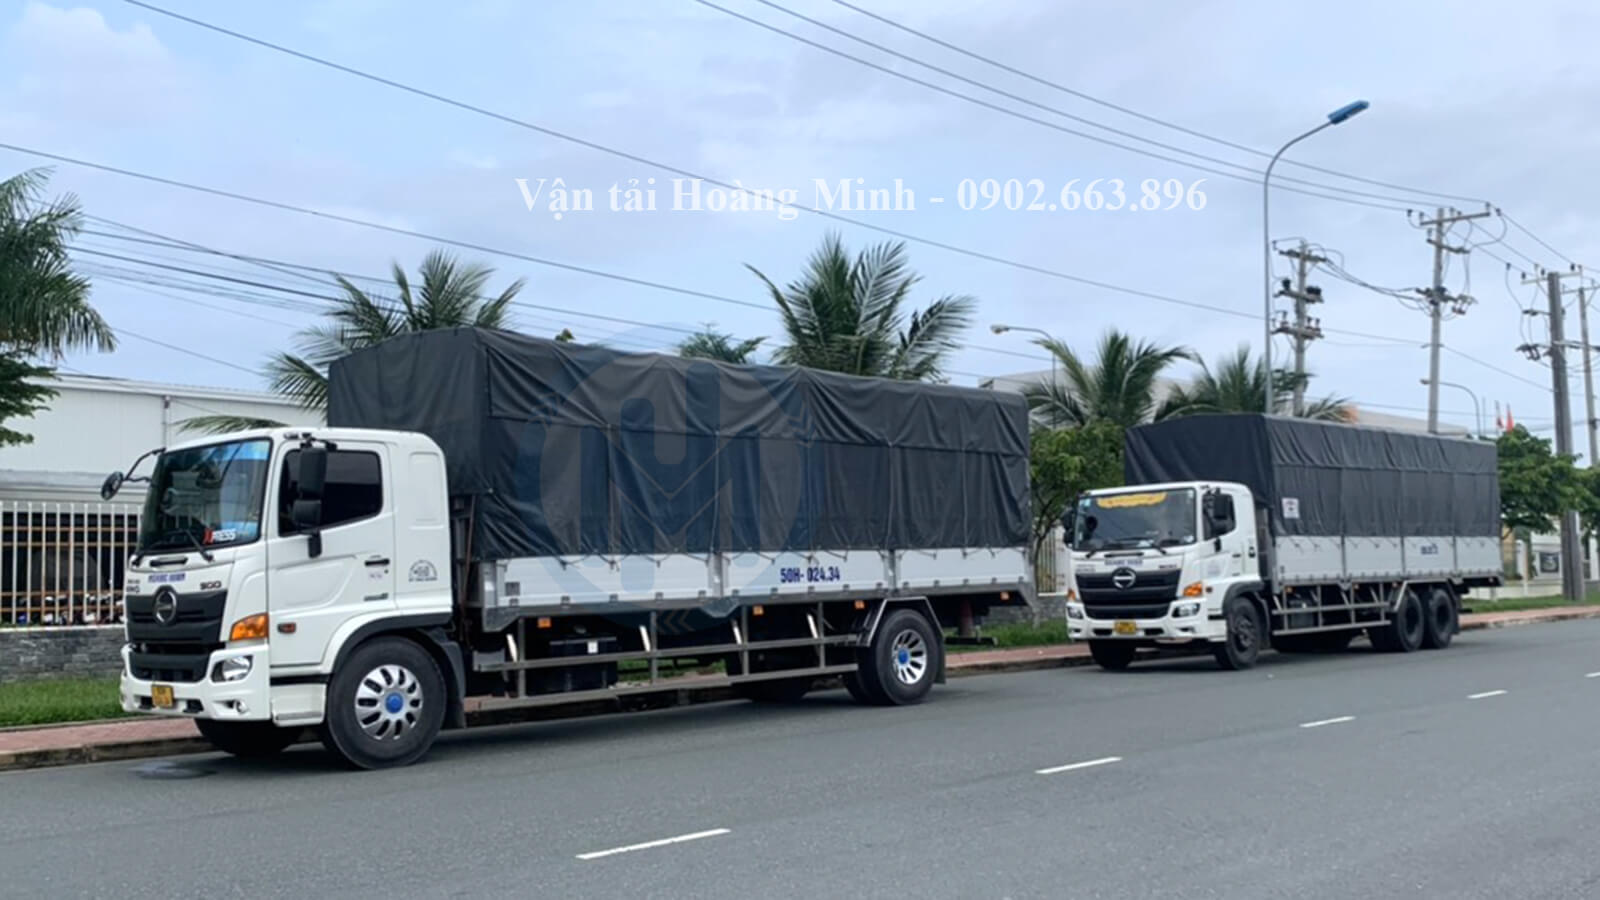 Cách đặt thuê xe tải chở hàng 15 tấn của Vận tải Hoàng Minh như thế nào